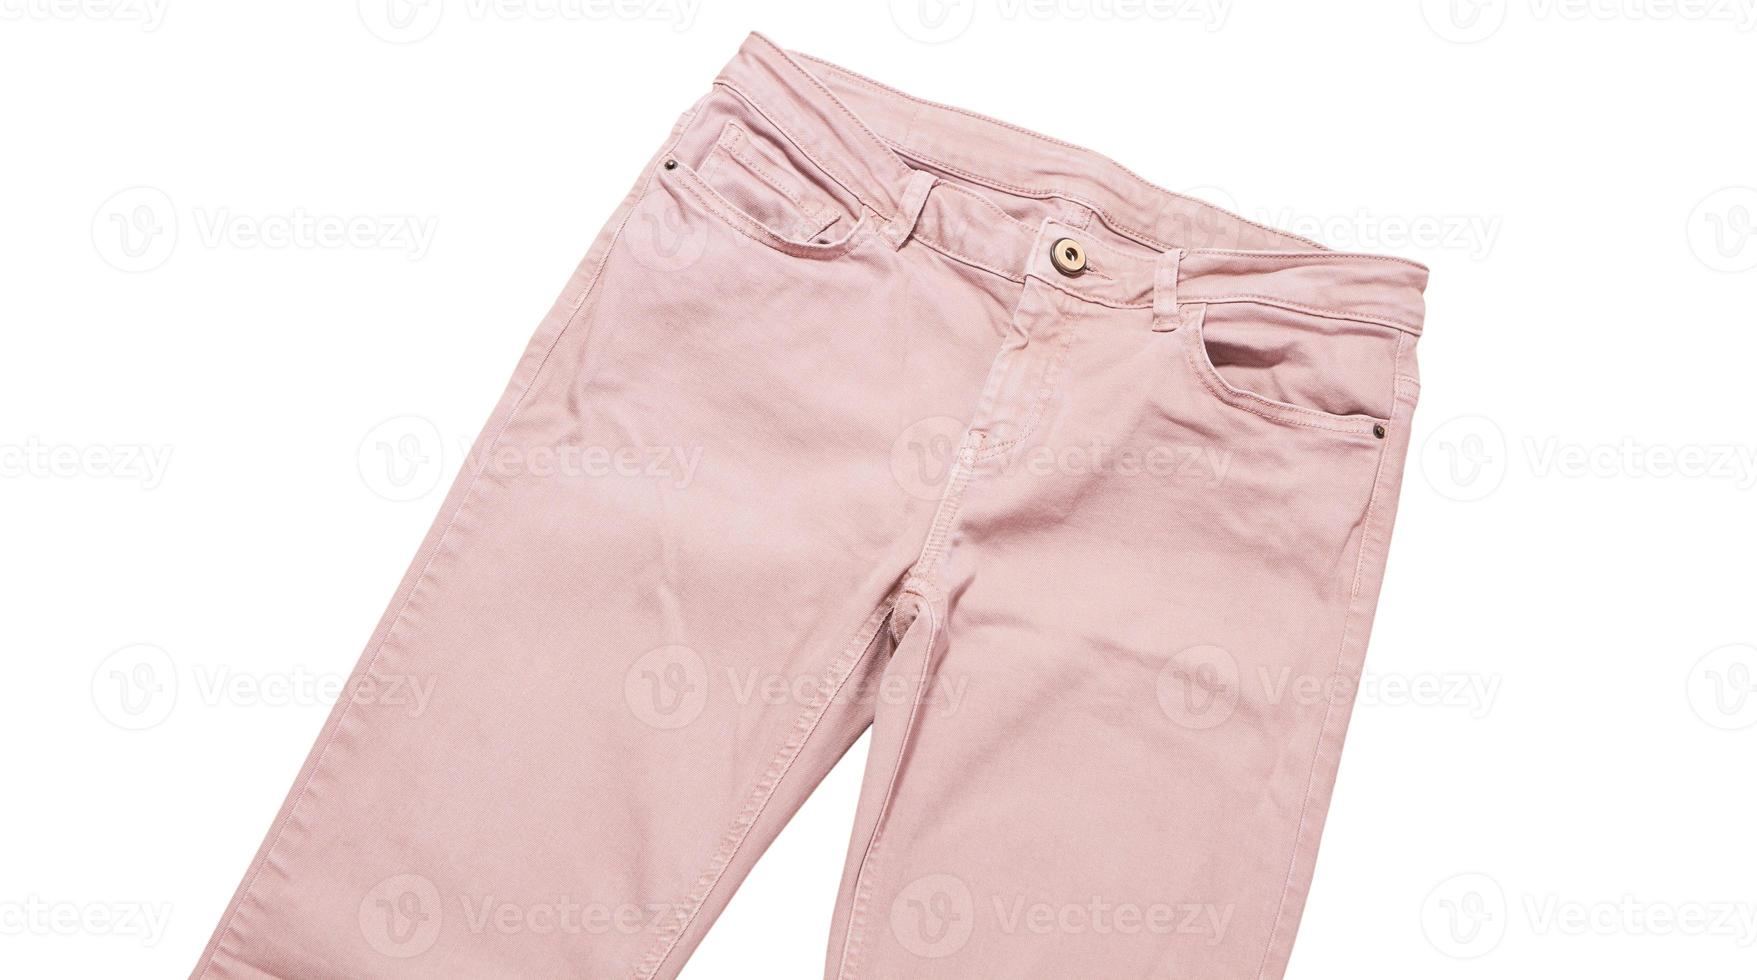 vrouwelijke broek, licht roze denim broek bovenaanzicht geïsoleerd op een witte achtergrond, gevouwen slanke broek foto